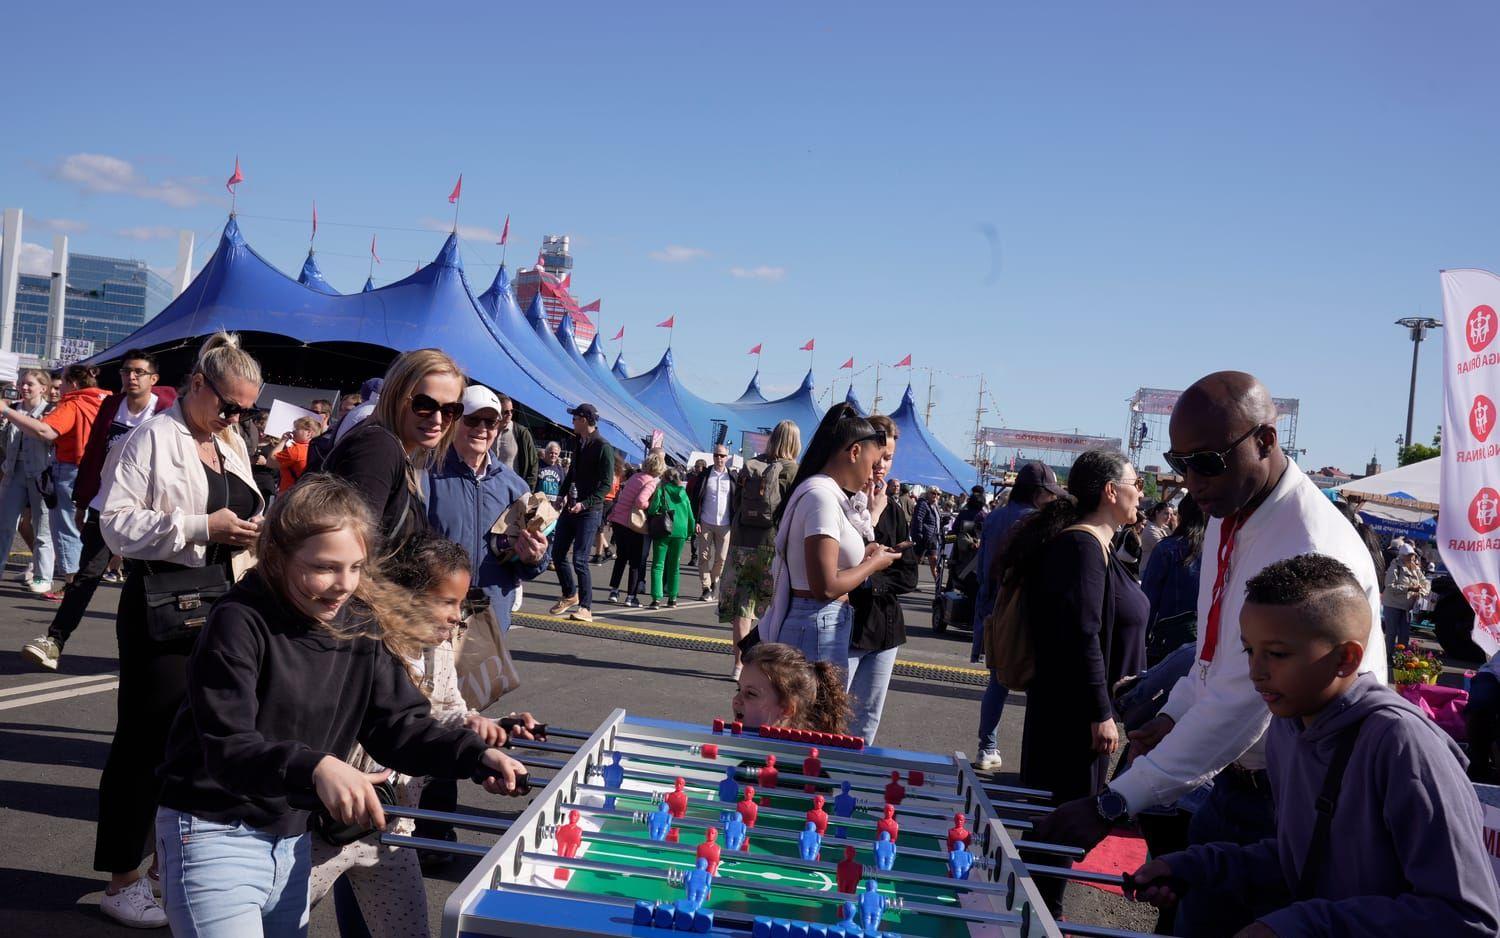 Många aktiviteter ryms på festivalområdet i Frihamnen, här tävlas det i fussball.